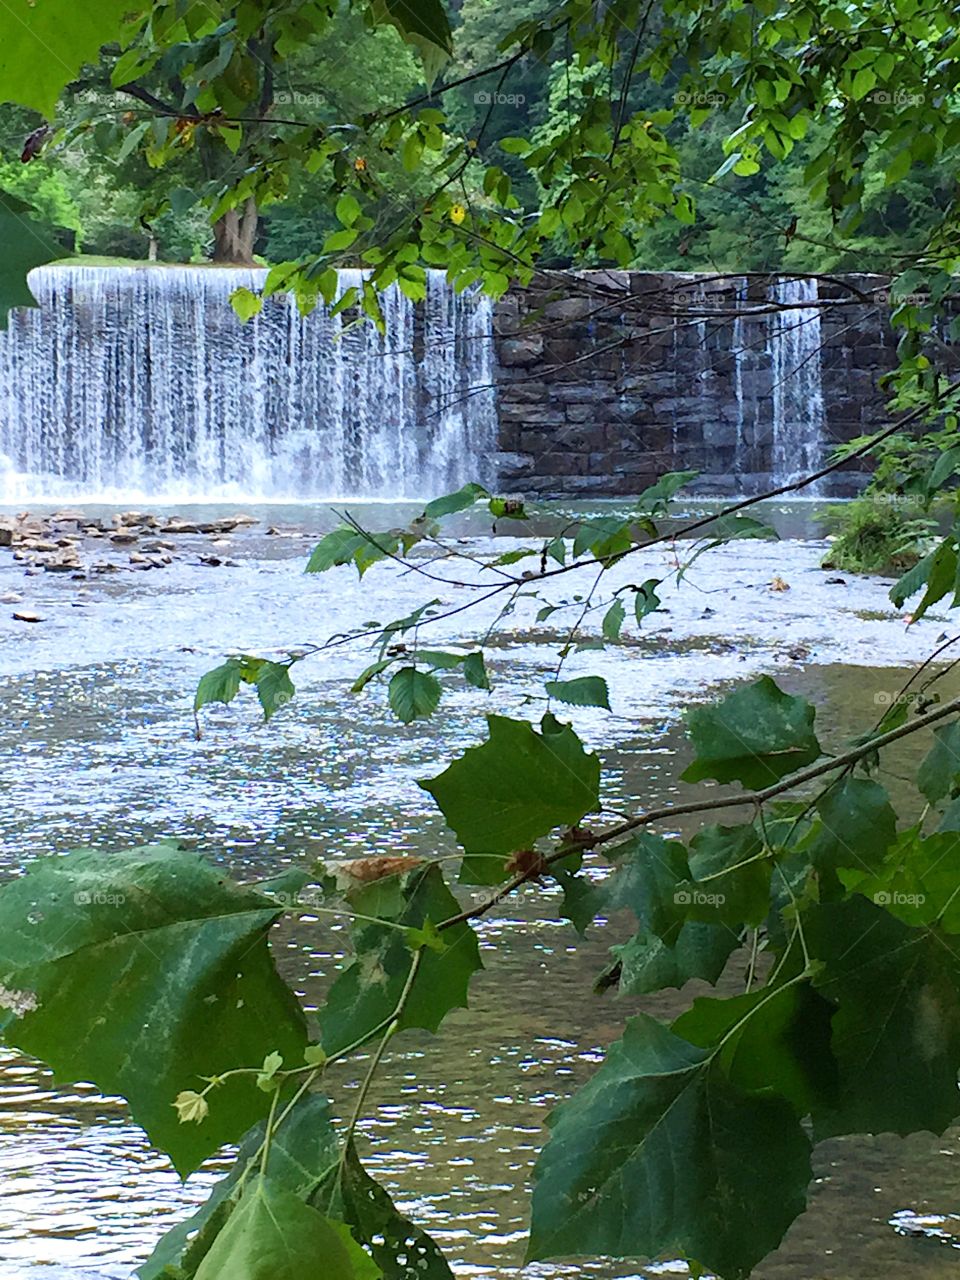 Hollins Mill Falls